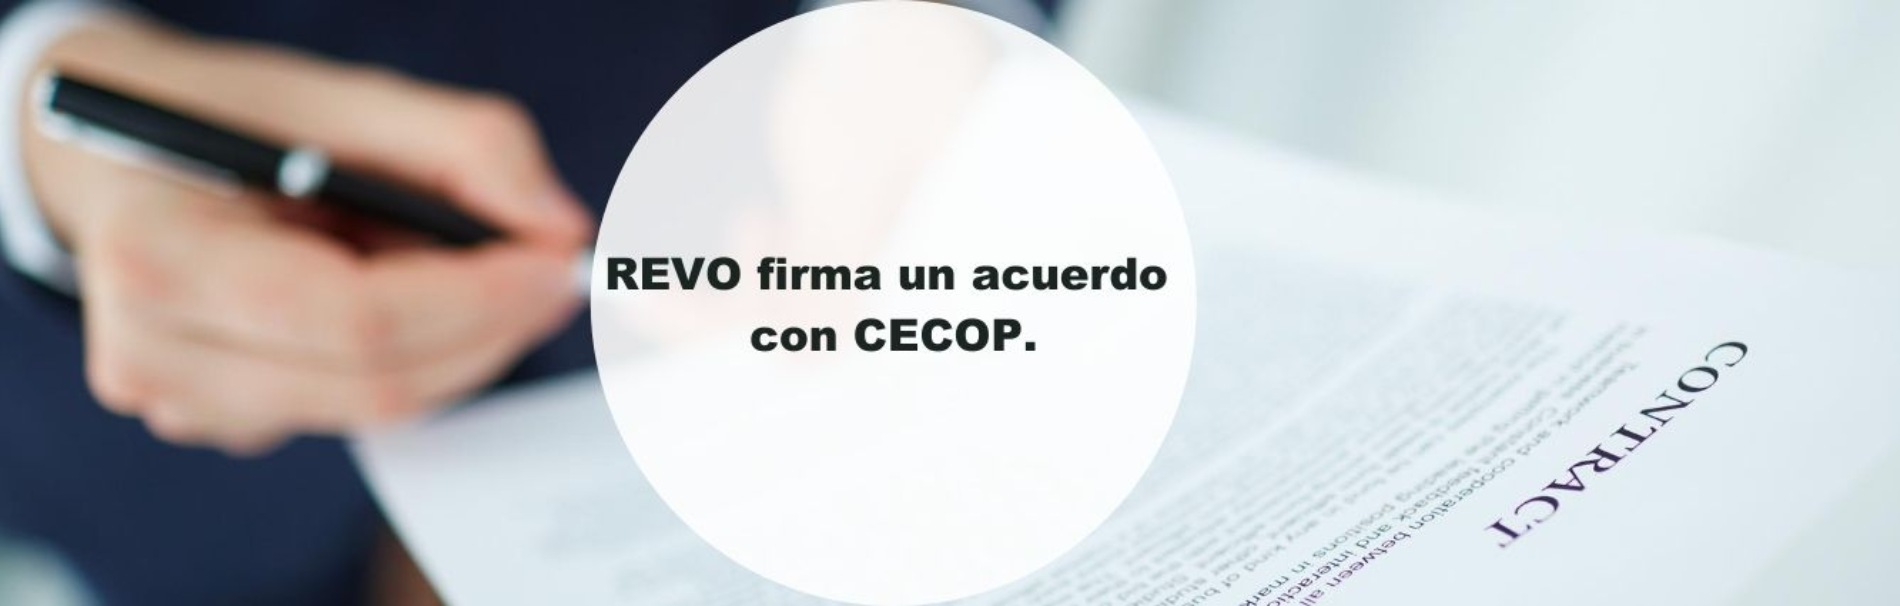 REVO firma un acuerdo con CECOP